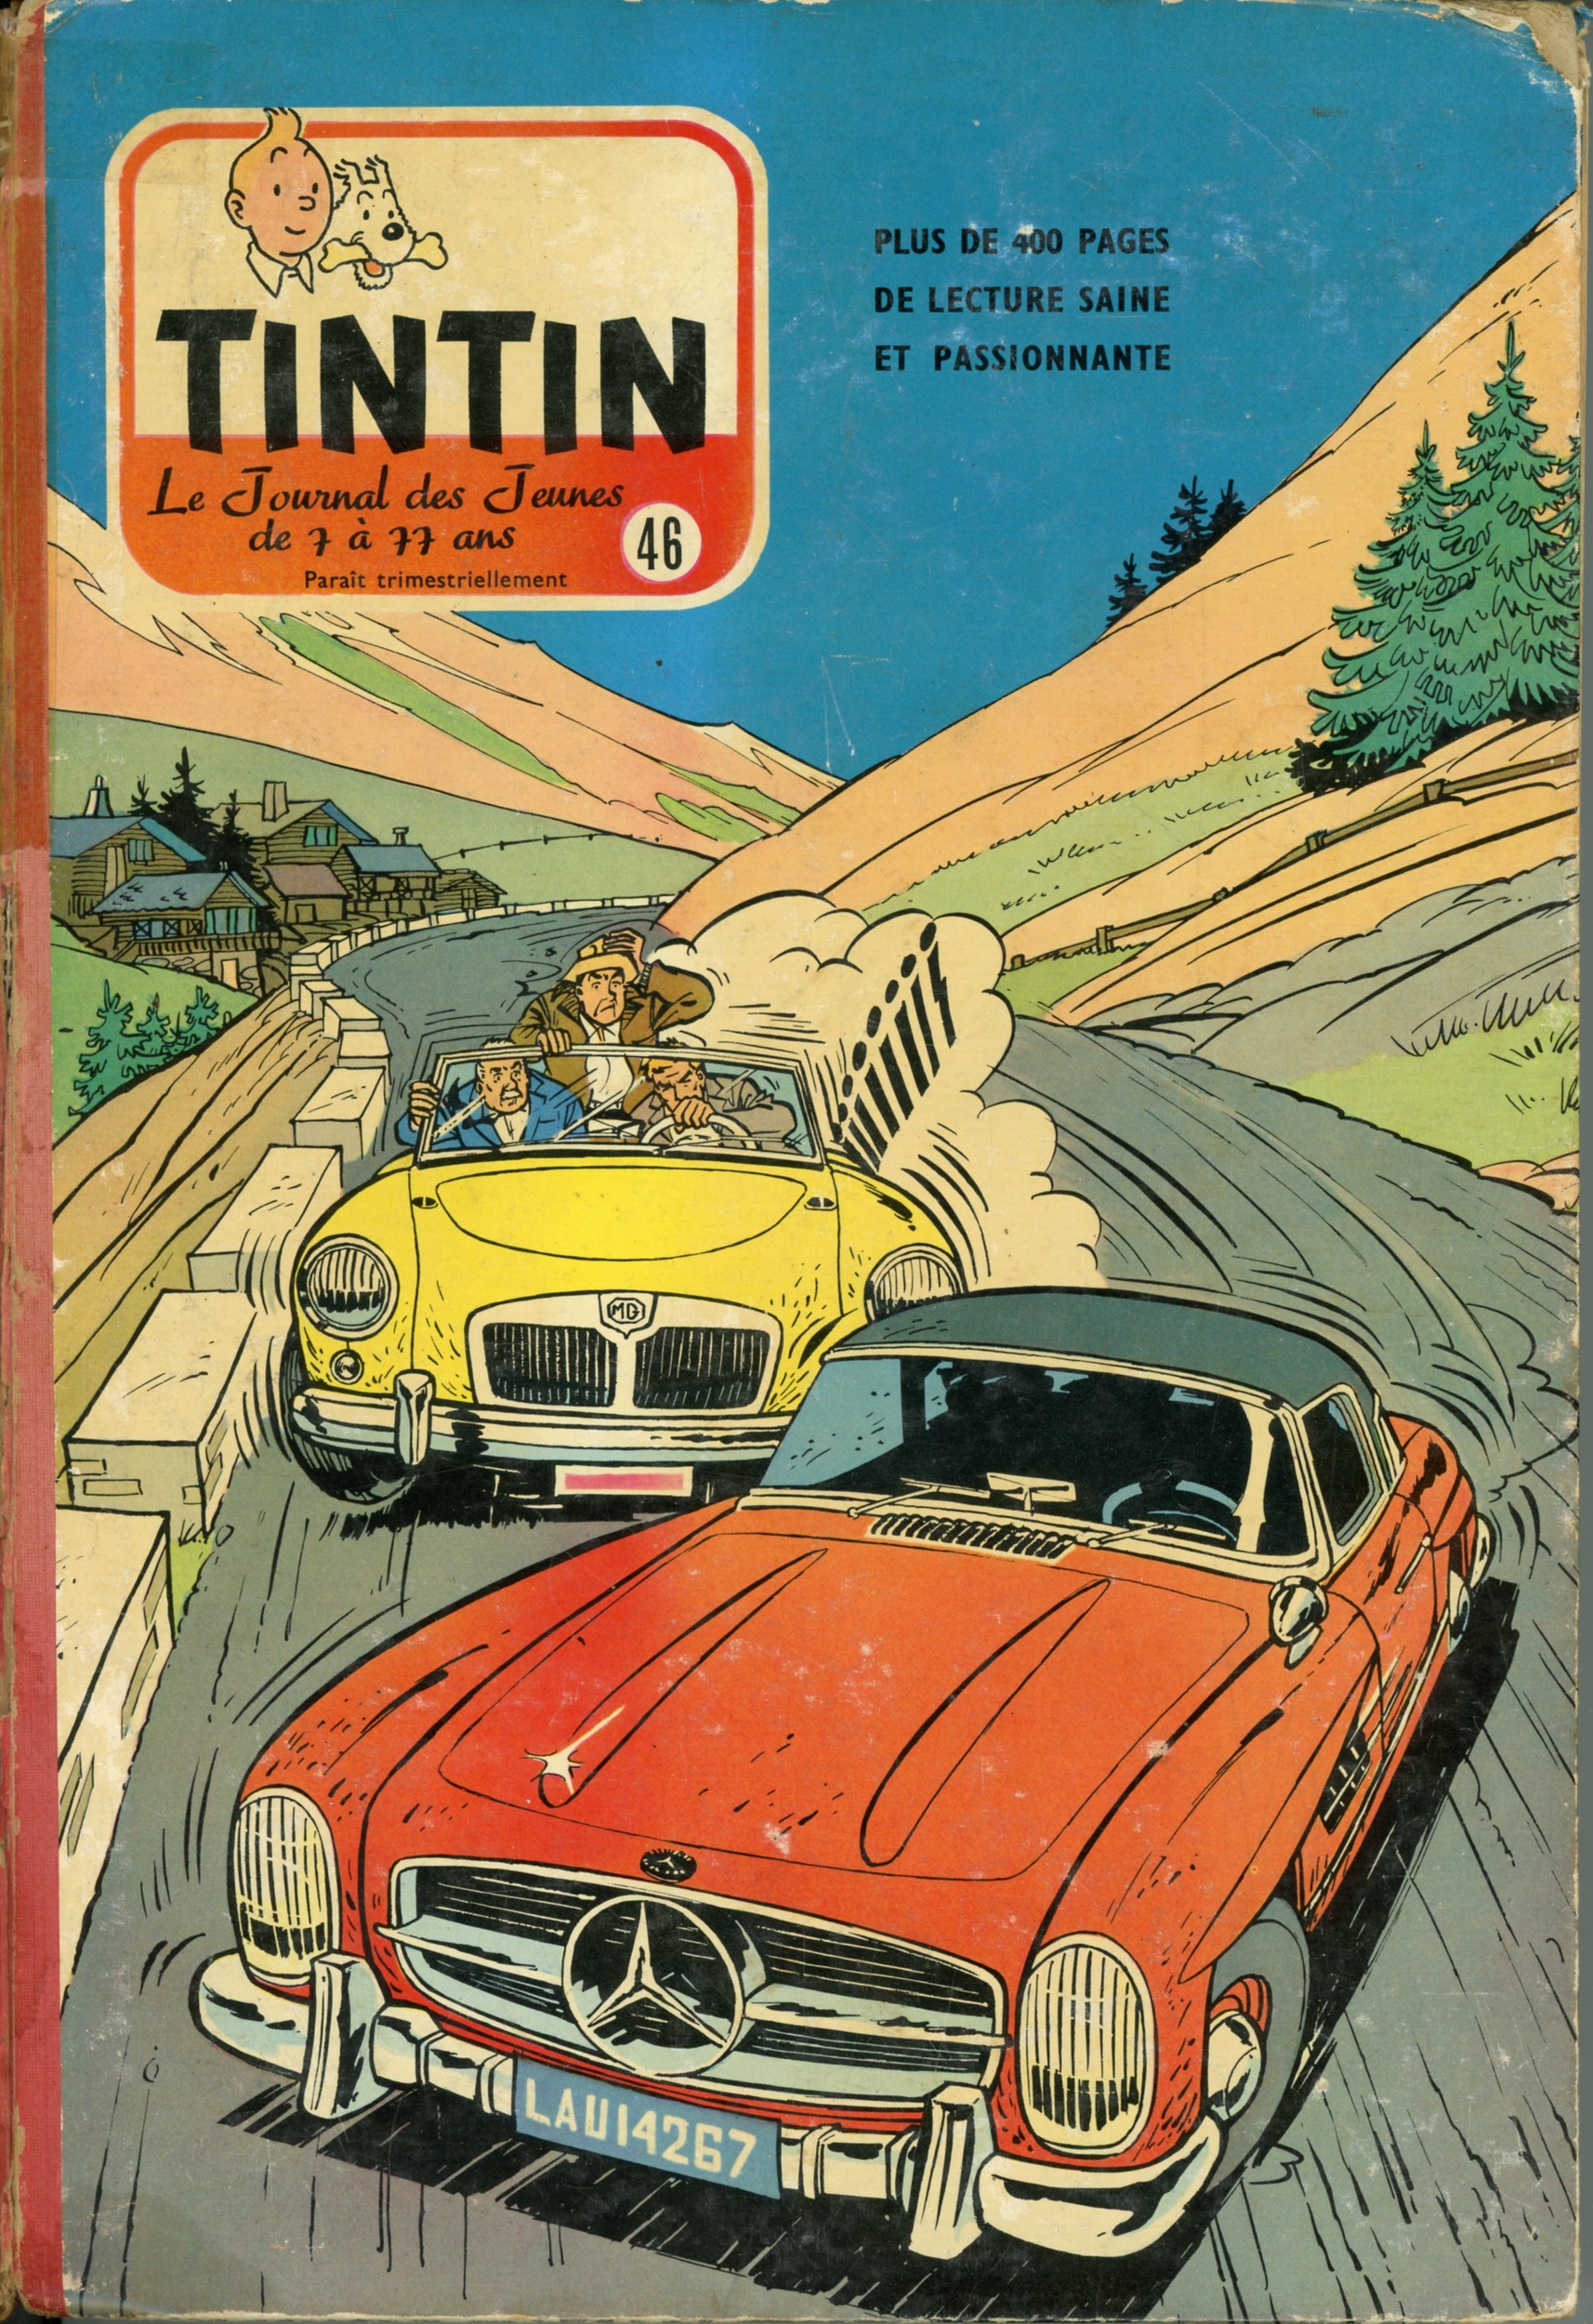 RELIURE TINTIN 46 - RECUEIL JOURNAL TINTIN HERGÉ CALENDRIER 1960 ÉDITION BELGE